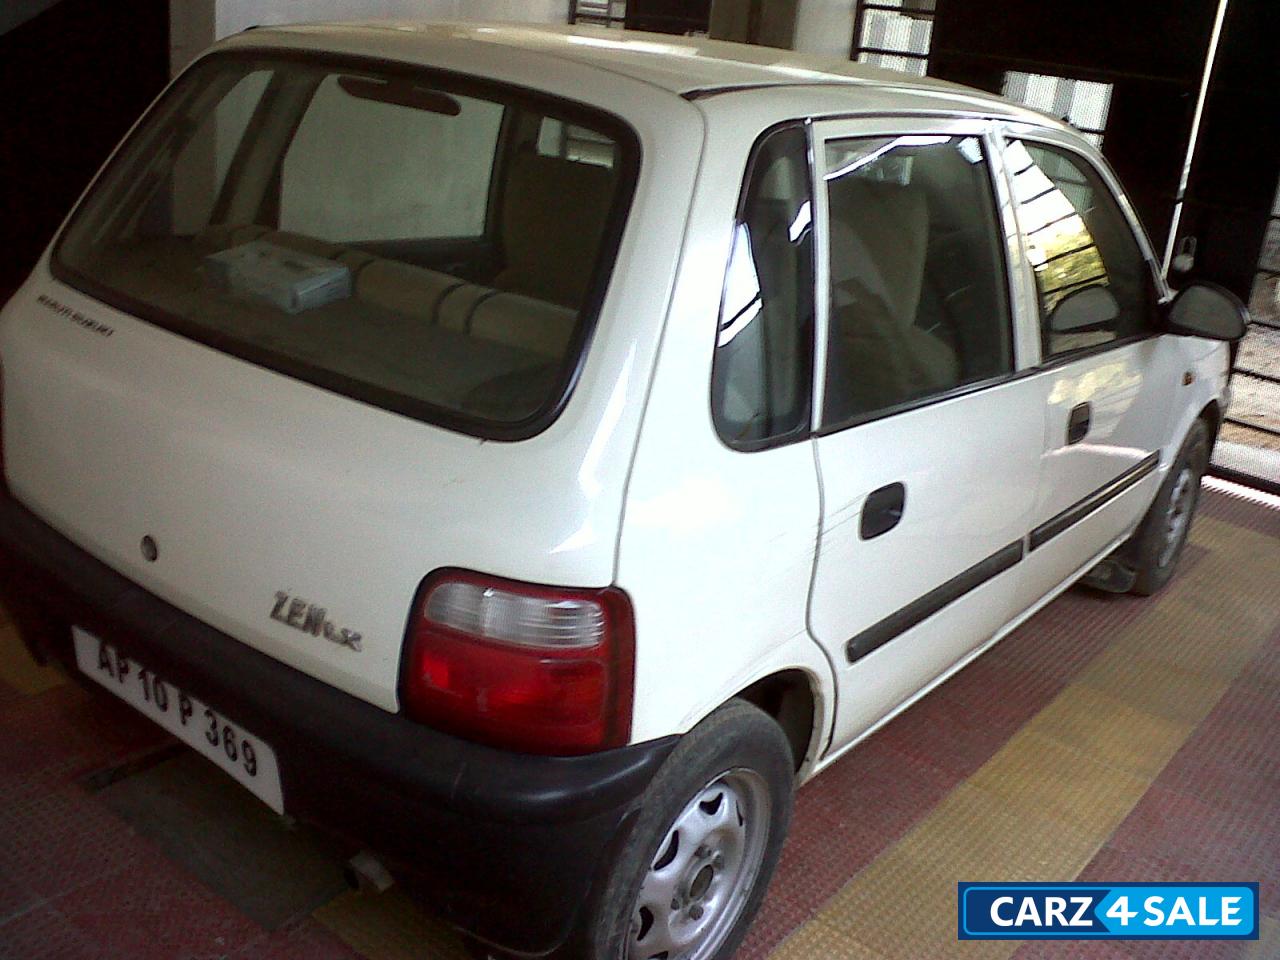 White Maruti Suzuki Zen Picture 2. Car ID 1557. Car located in ...